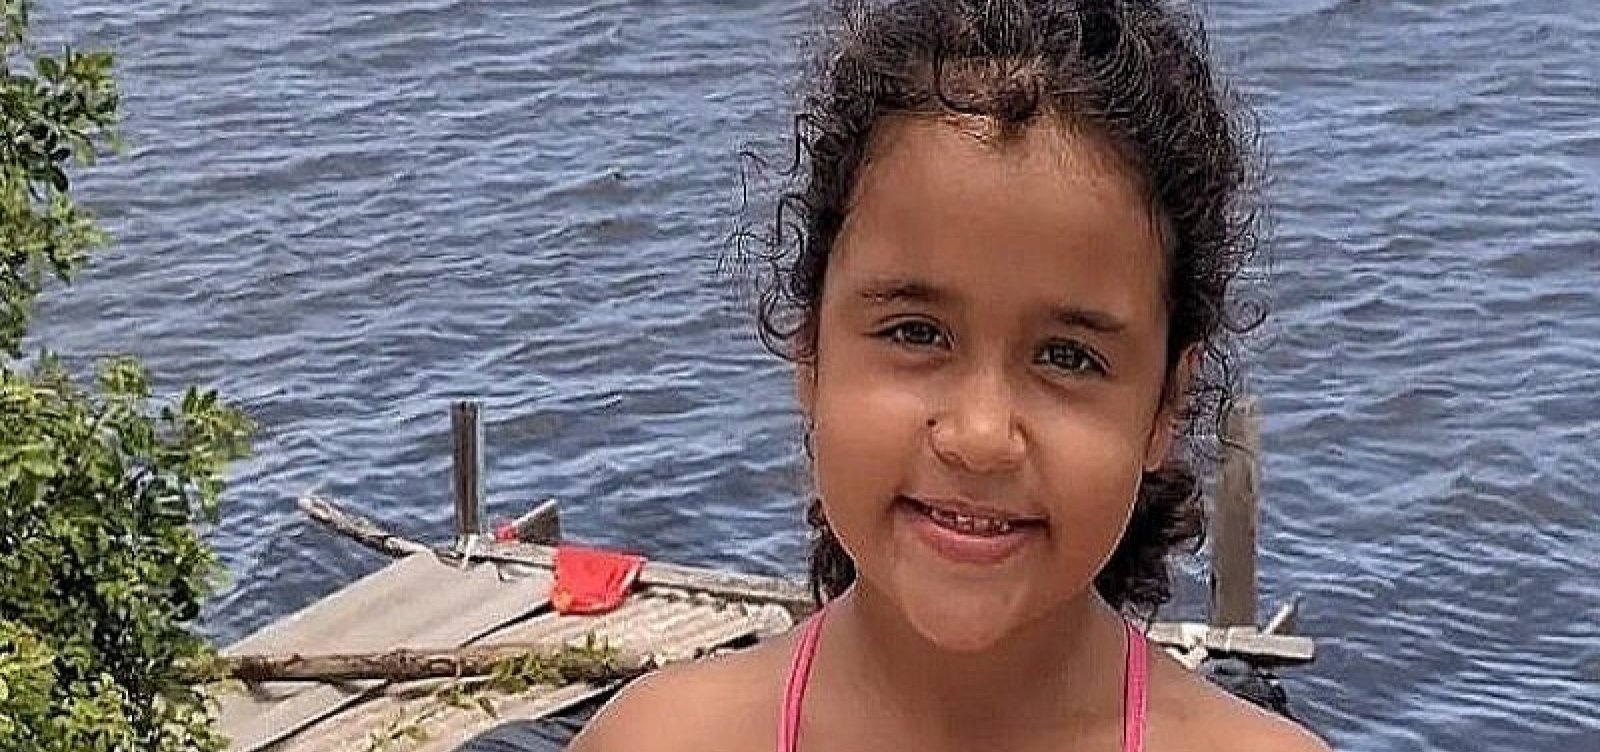 Menina de 6 anos encontrada morta na Bahia teria sido estuprada, diz família